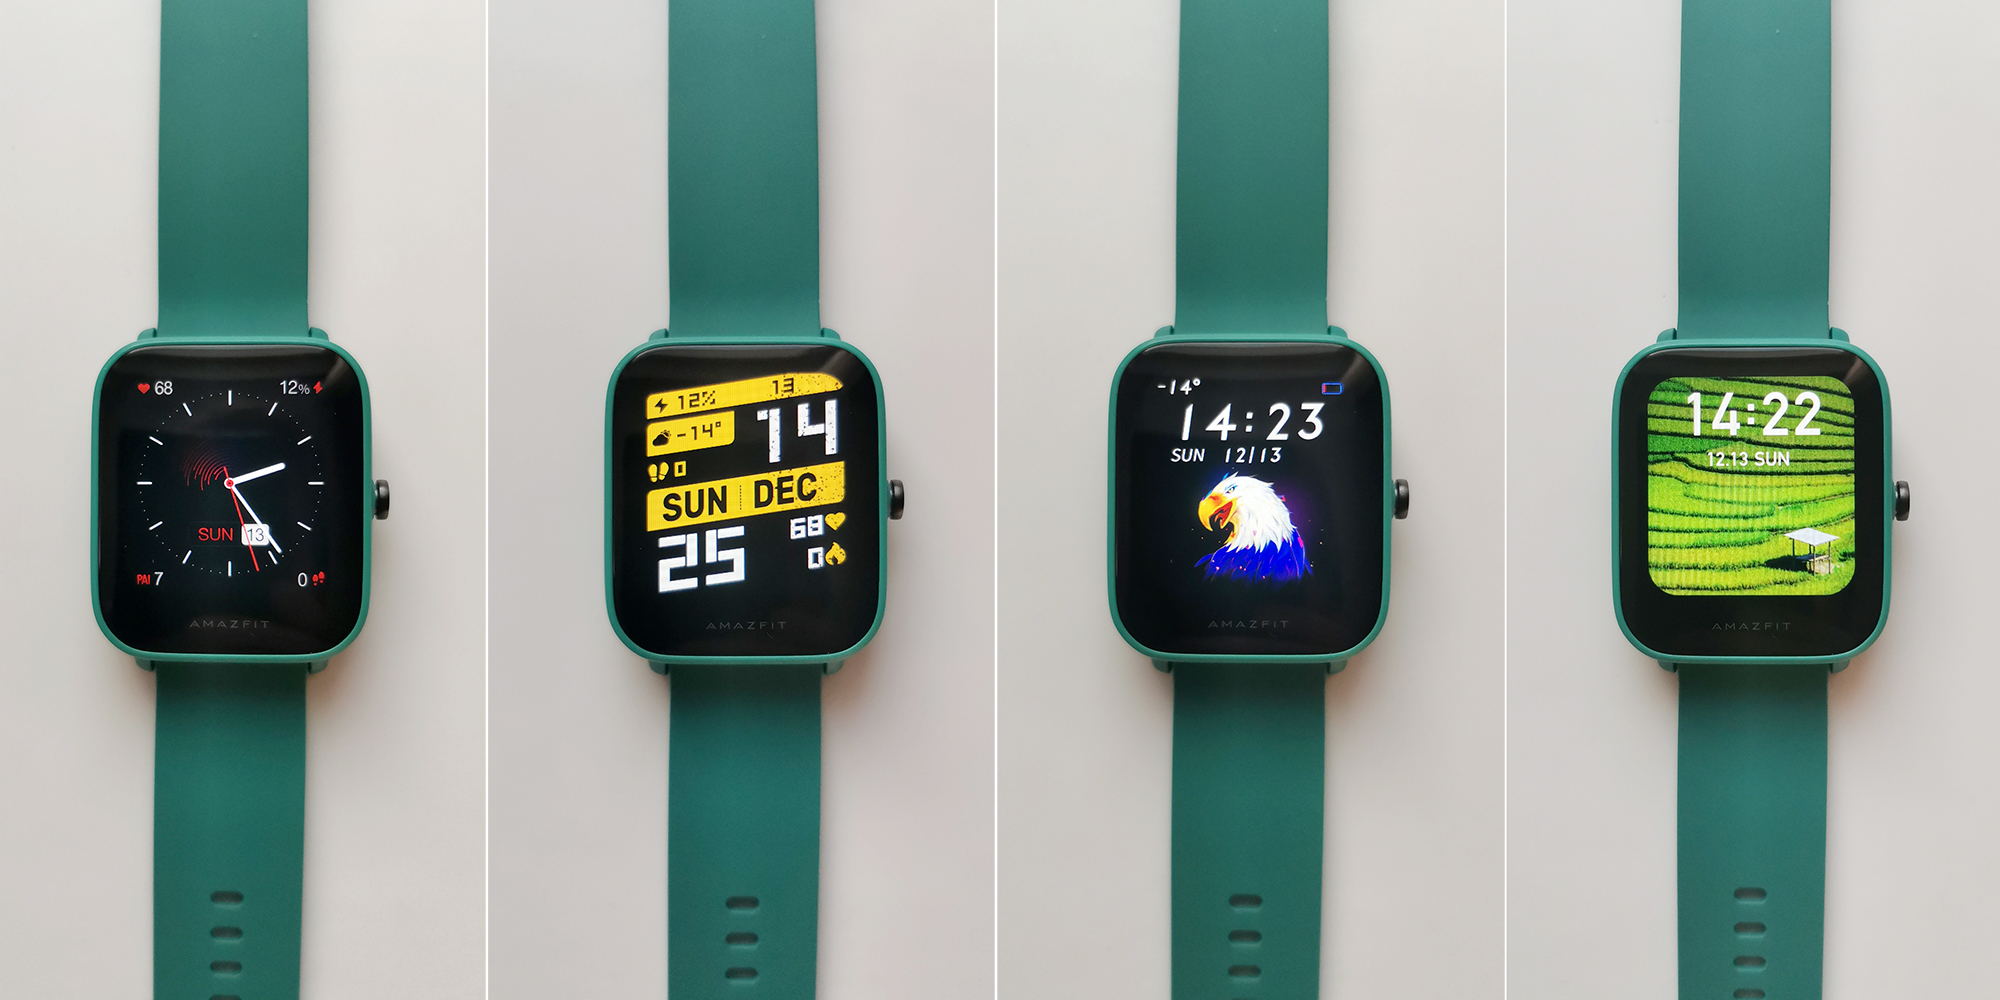 Циферблаты для часов amazfit. Xiaomi Amazfit Bip циферблаты. Amazfit Bip u циферблаты. Часы Amazfit Bip Green. Смарт-часы Amazfit Bip 3 Pro.